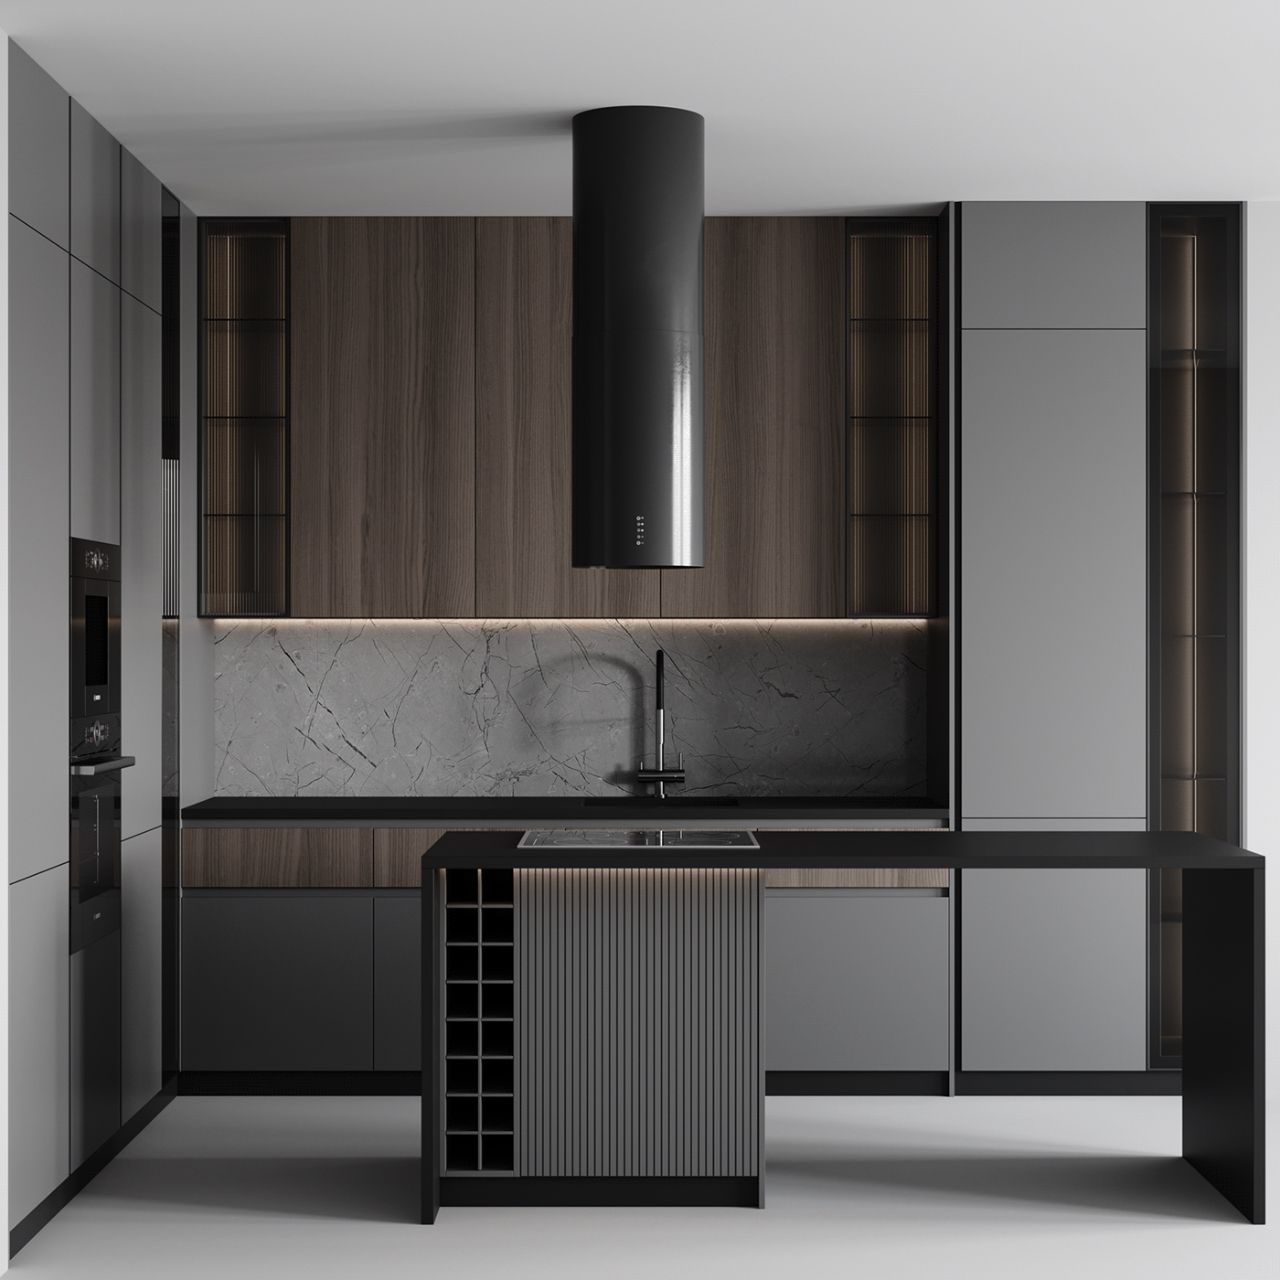 Mẫu thiết kế phòng bếp căn hộ chung cư hiện đại, đẳng cấp với chất liệu gỗ công nghiệp